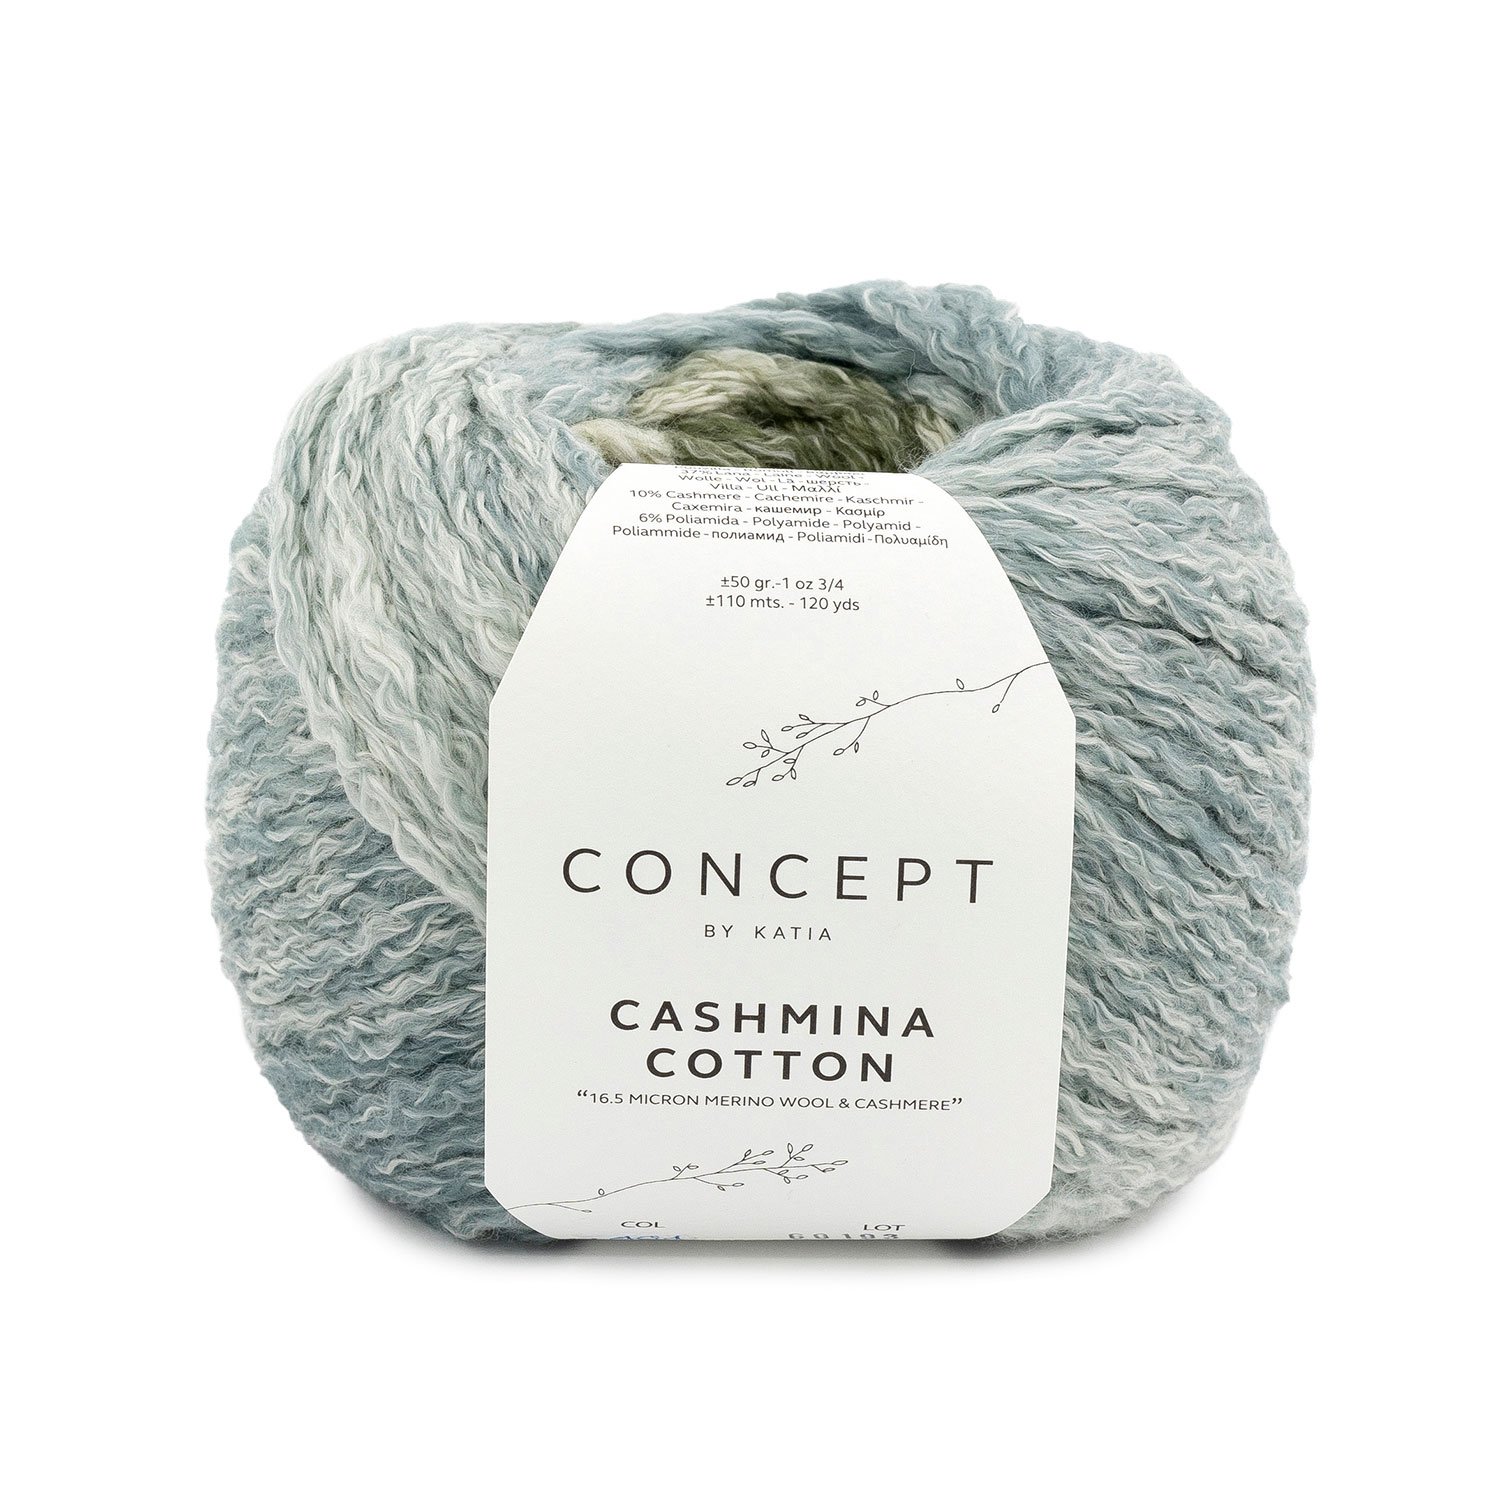 Cachmina Cotton 101